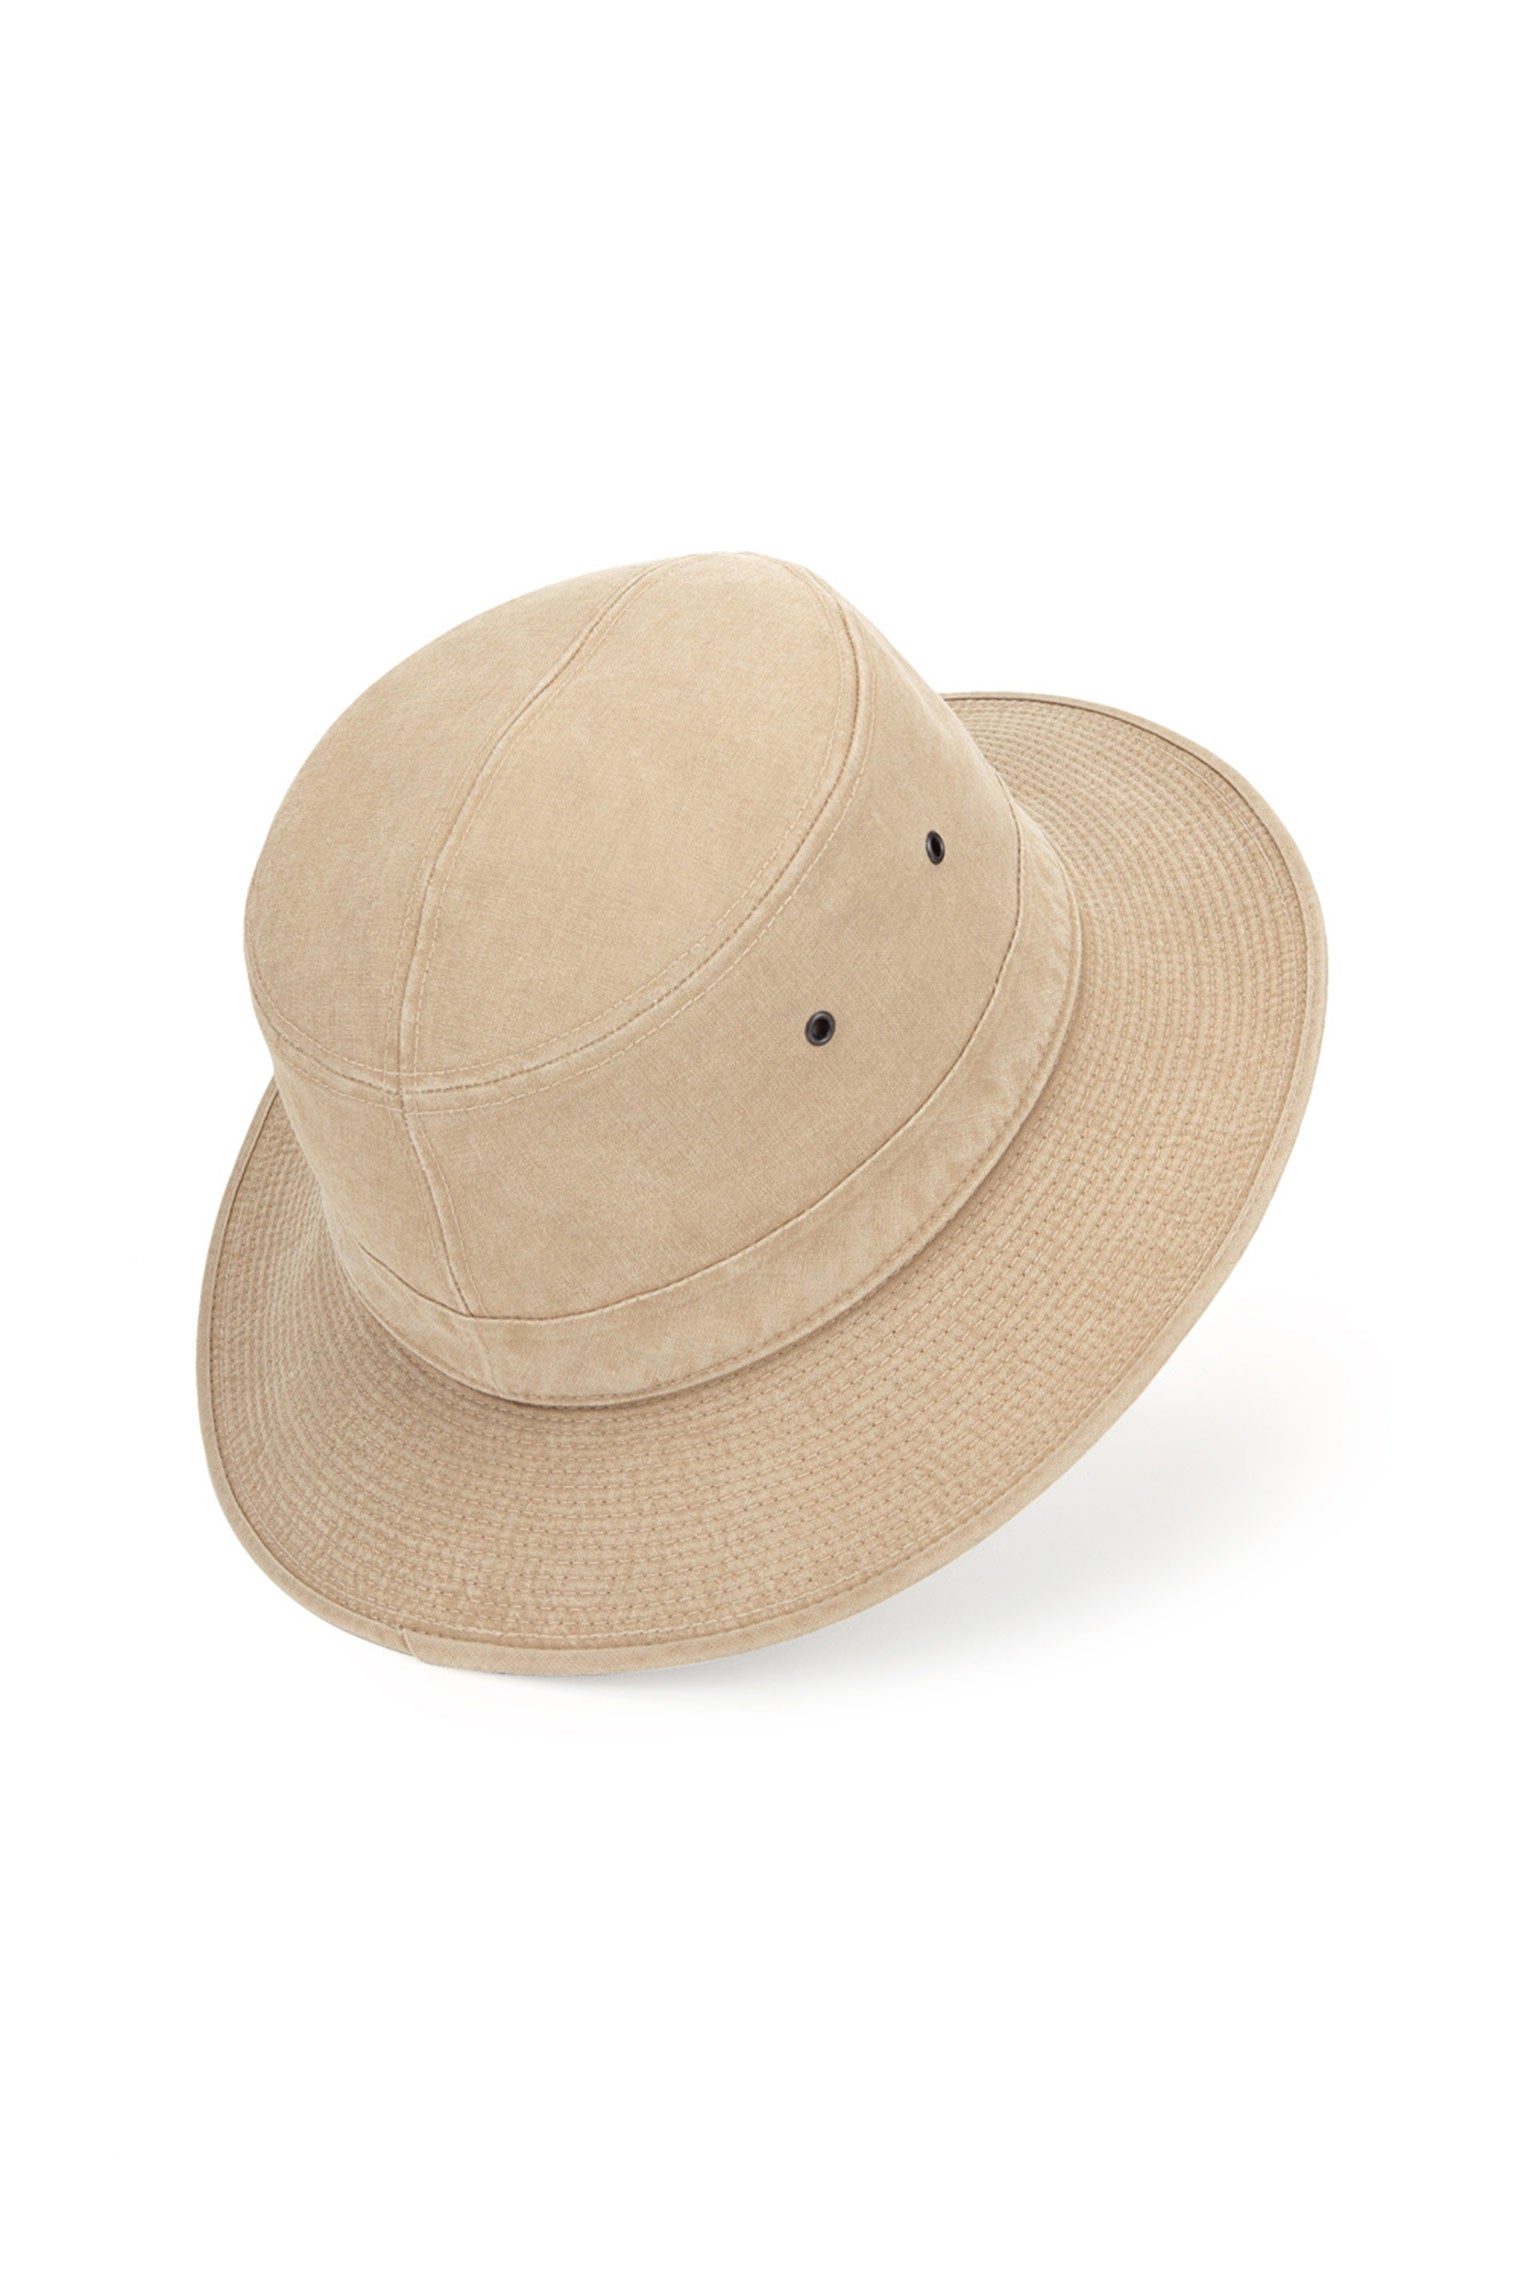 Capri Rollable Hat - Bucket Hats - Lock & Co. Hatters London UK